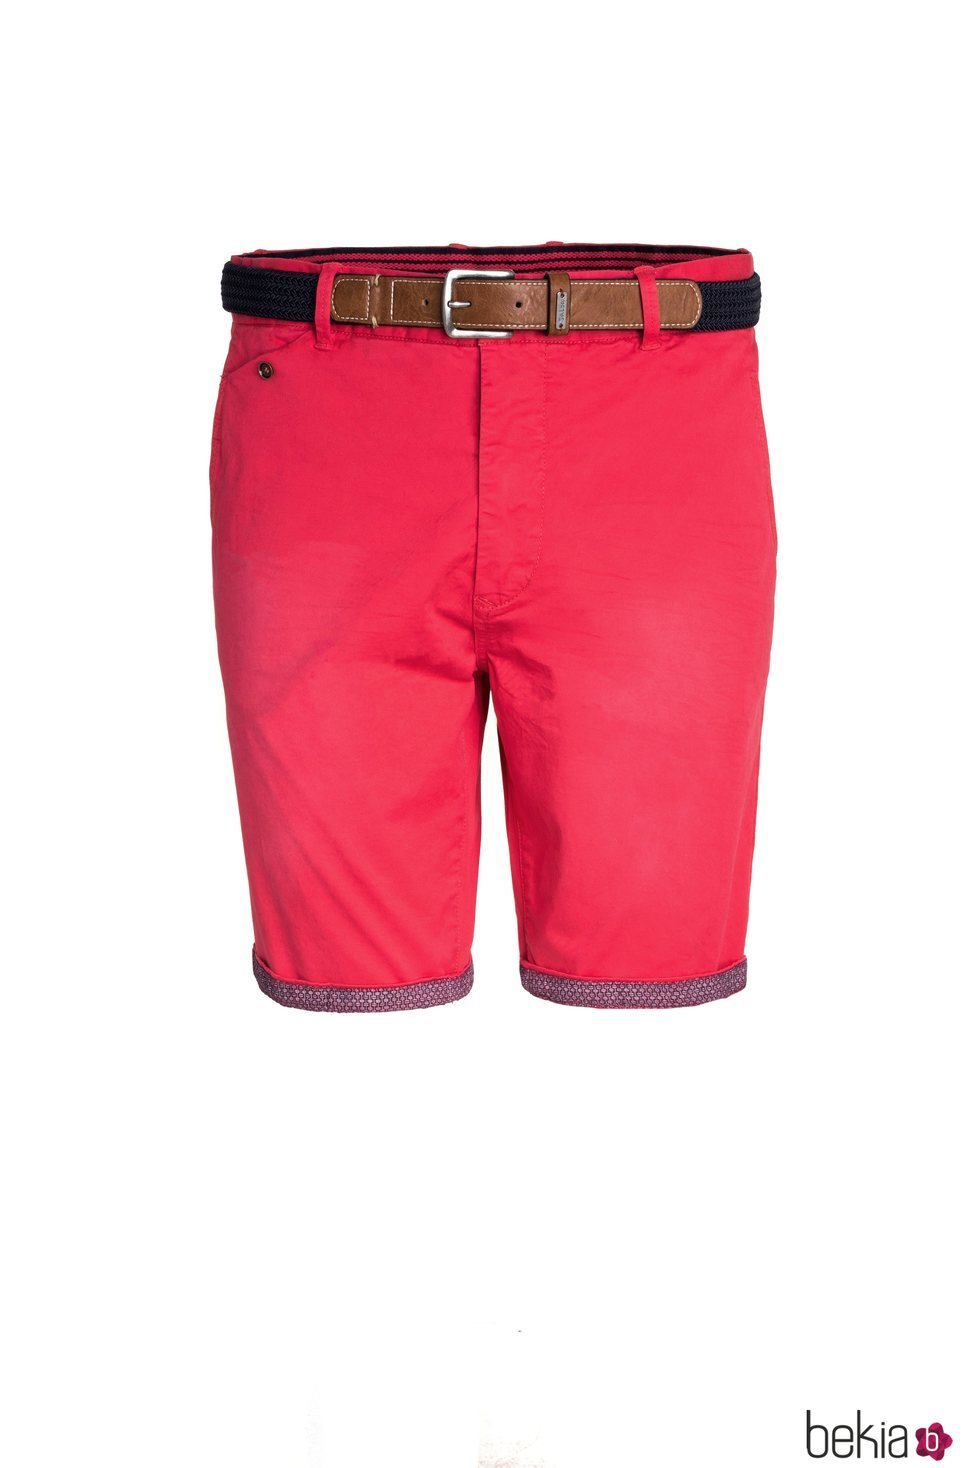 Short rojo con un cinturón marrón de Salsa para la primavera 2018